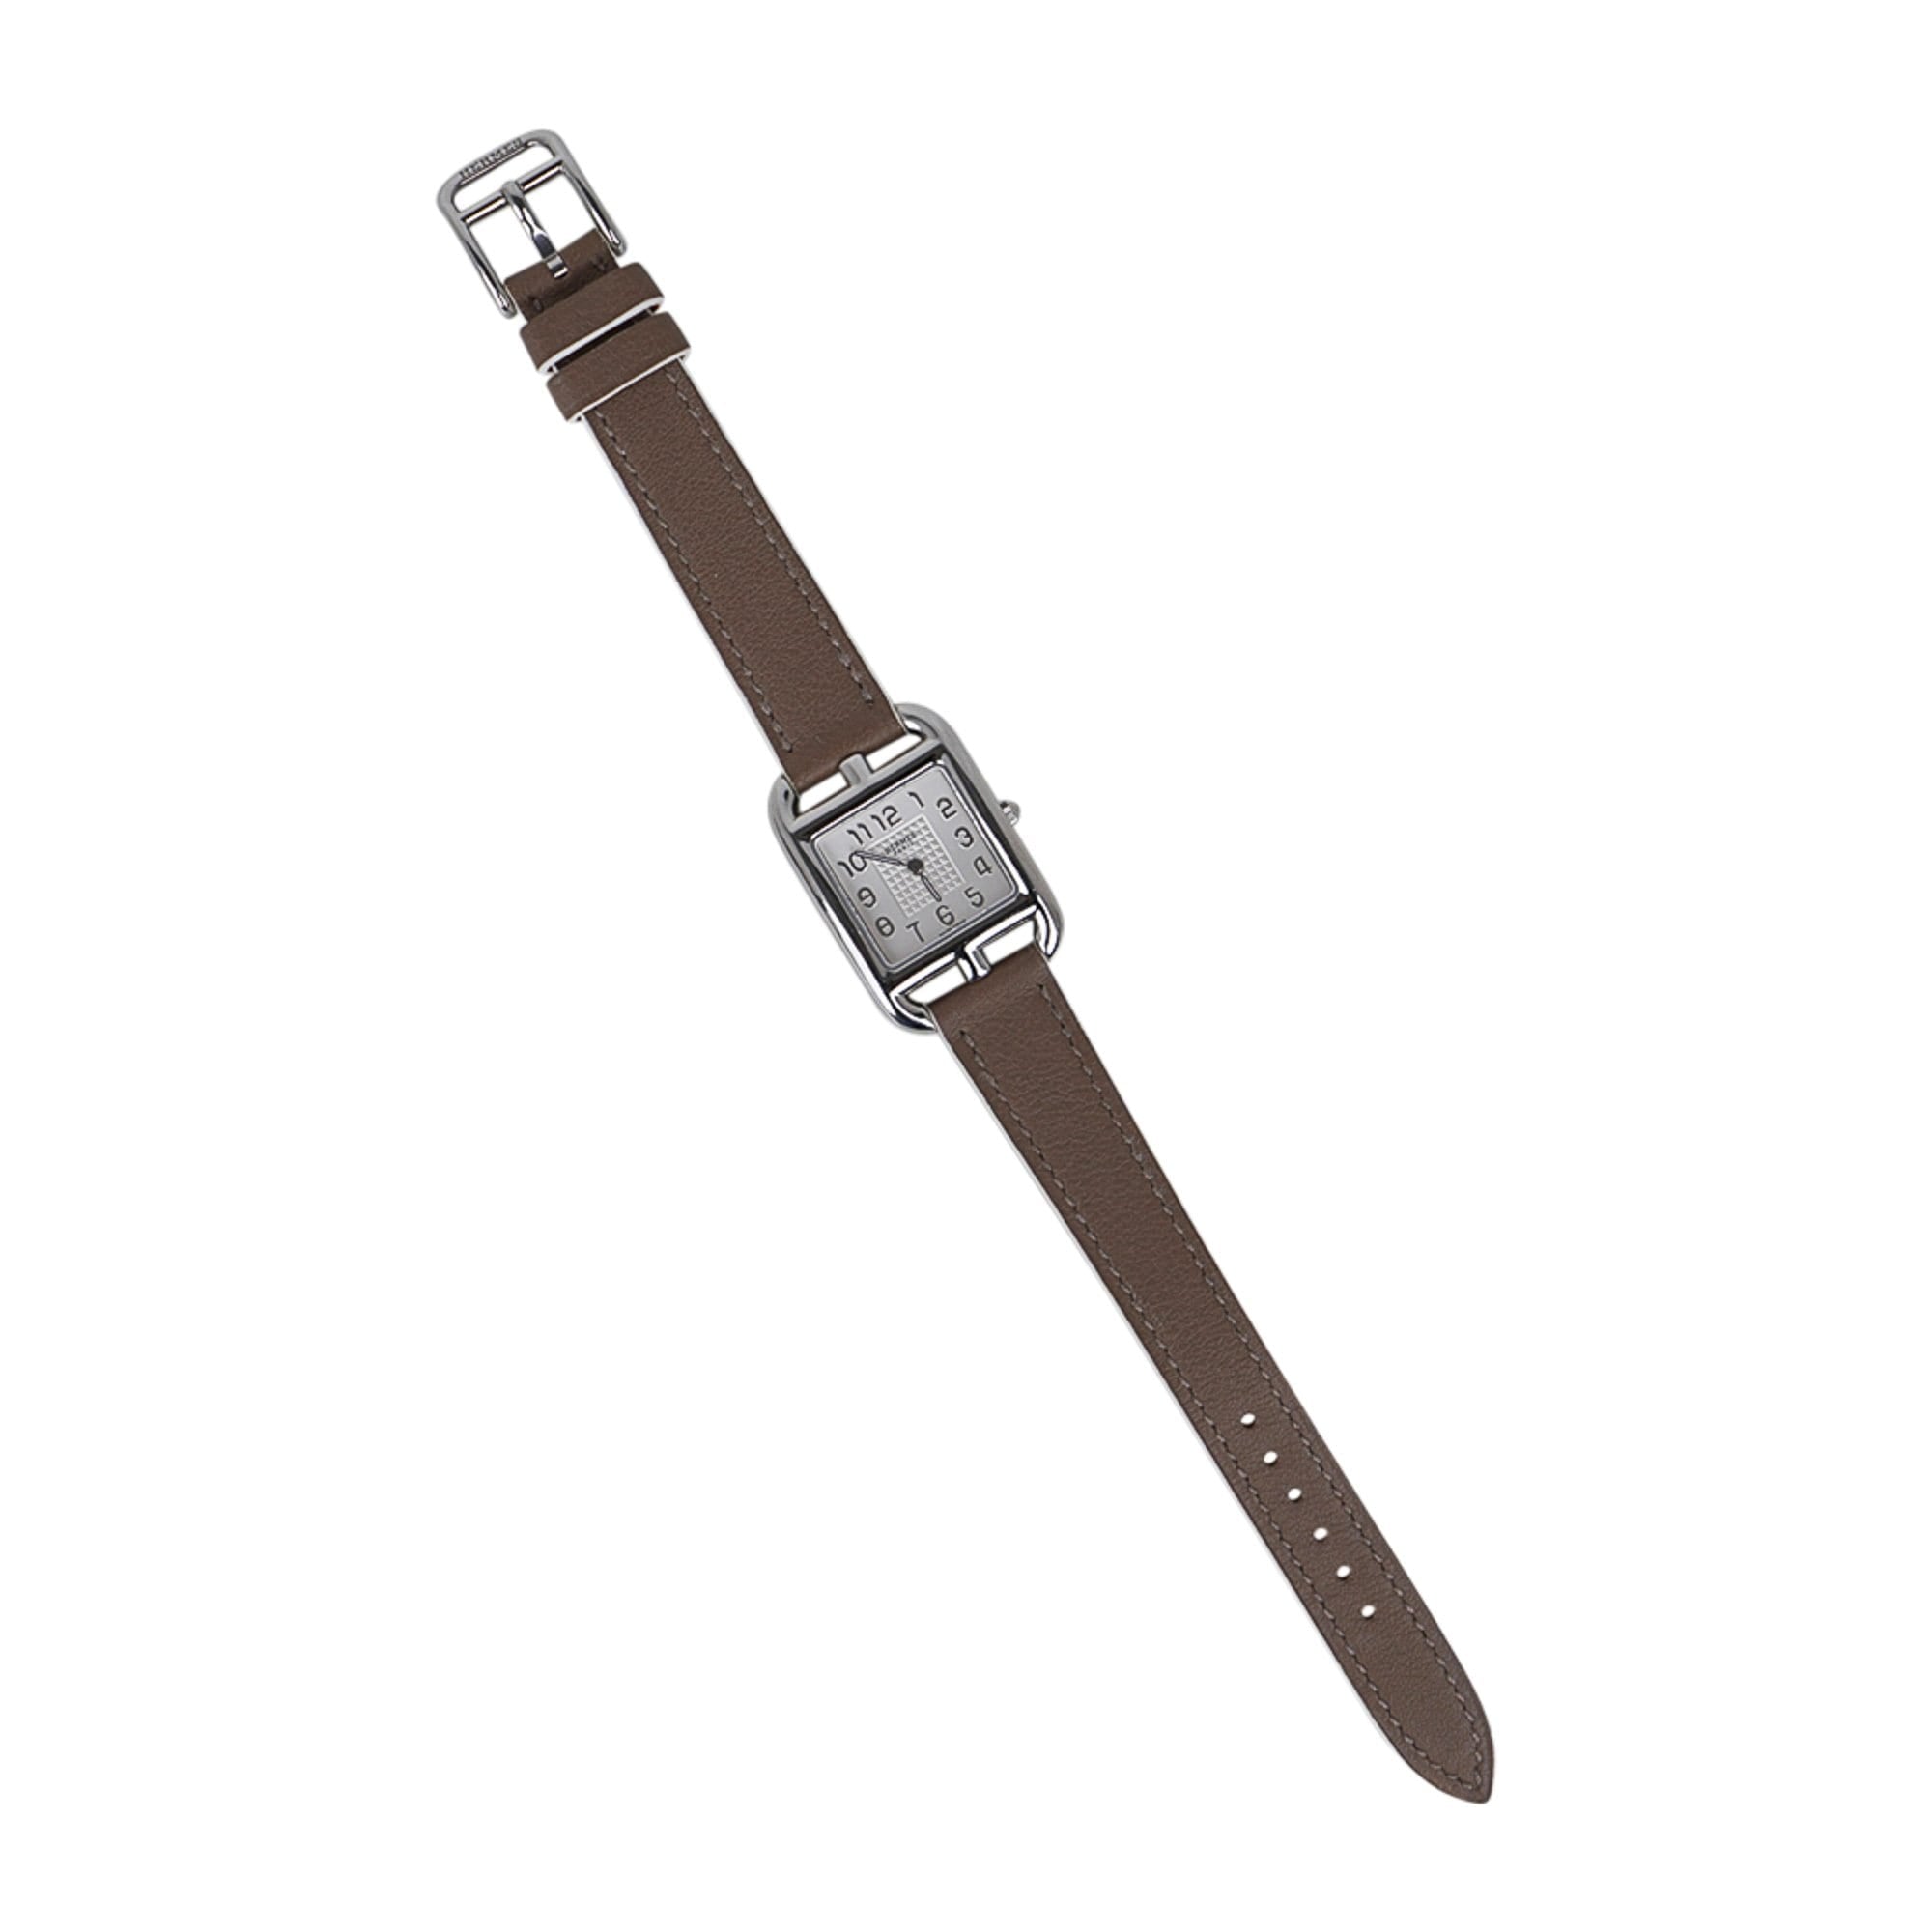 Women's Cape Cod Stainless Steel Bracelet Watch - Steel - Steel